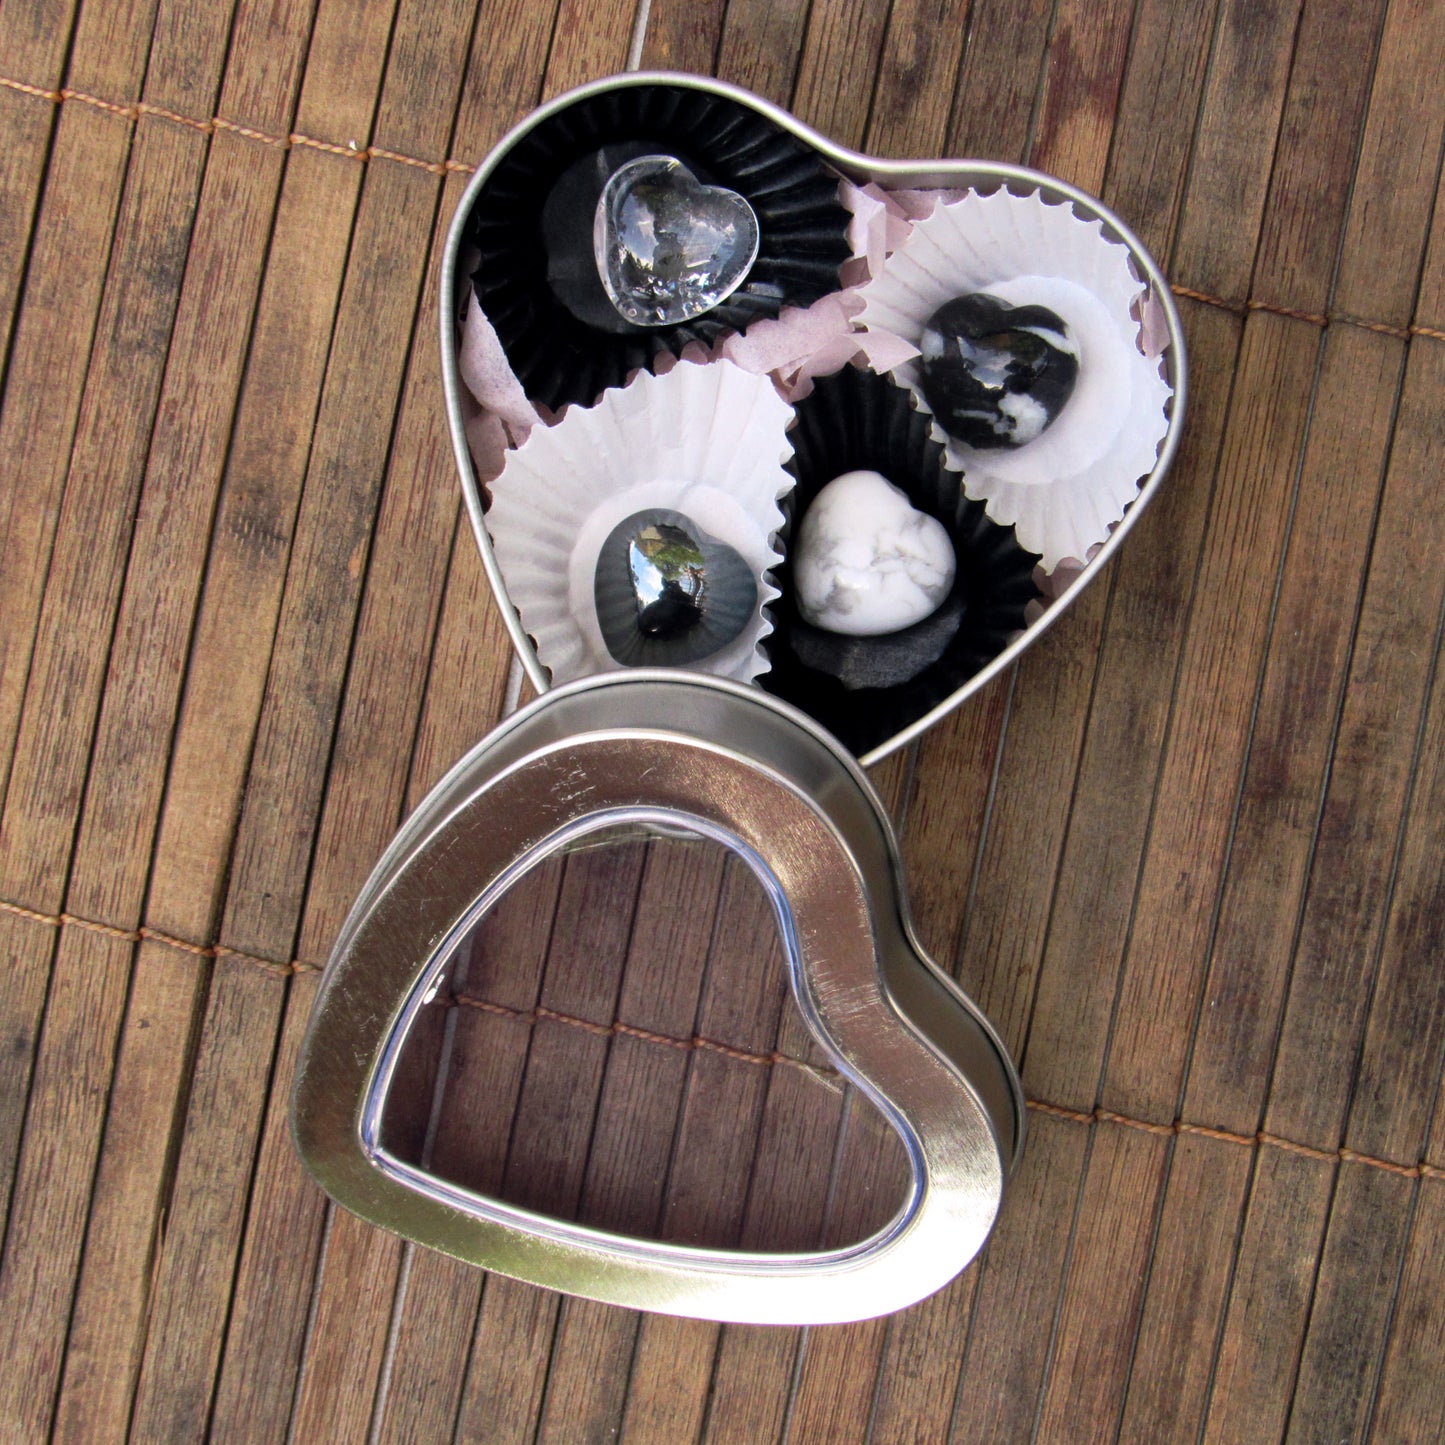 Gemstone Energy Kit in Heart Shaped Tin Gift